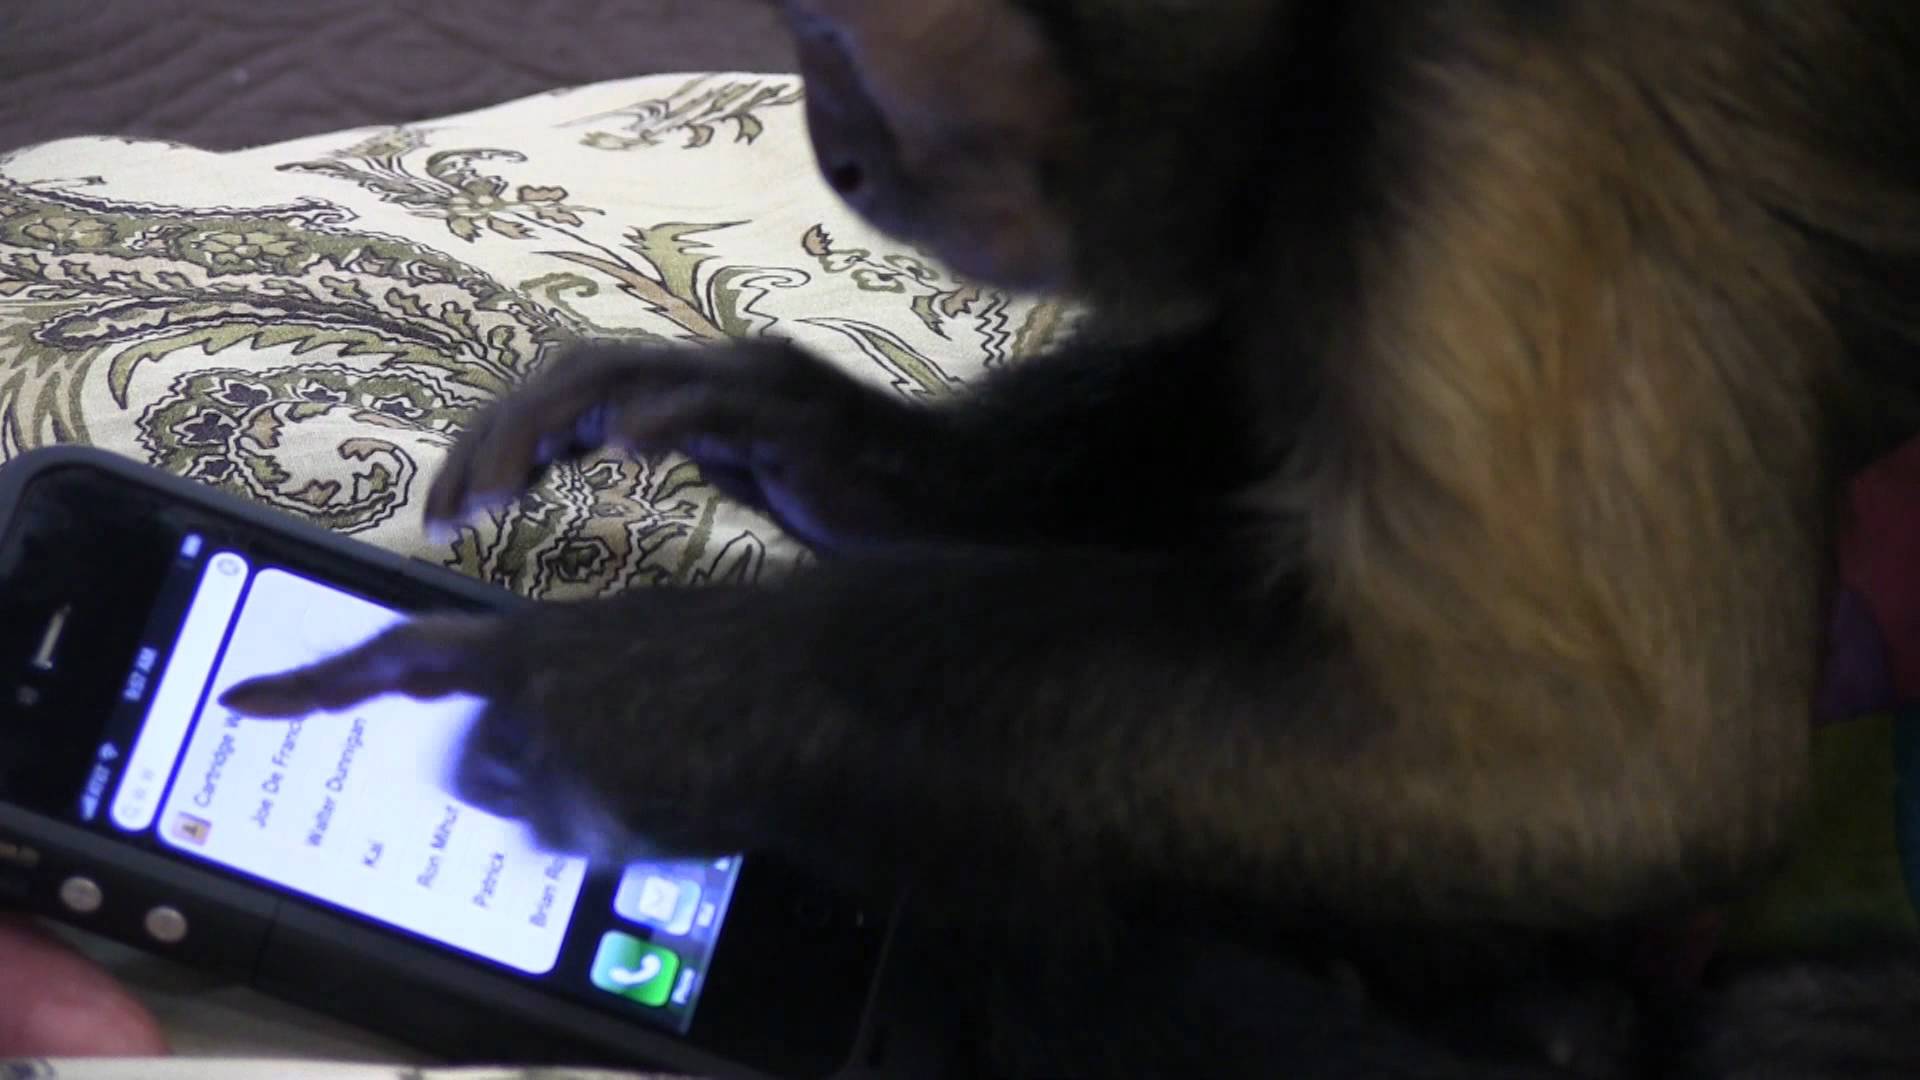 #videovrijdag Geef een aap een smartphone... 1